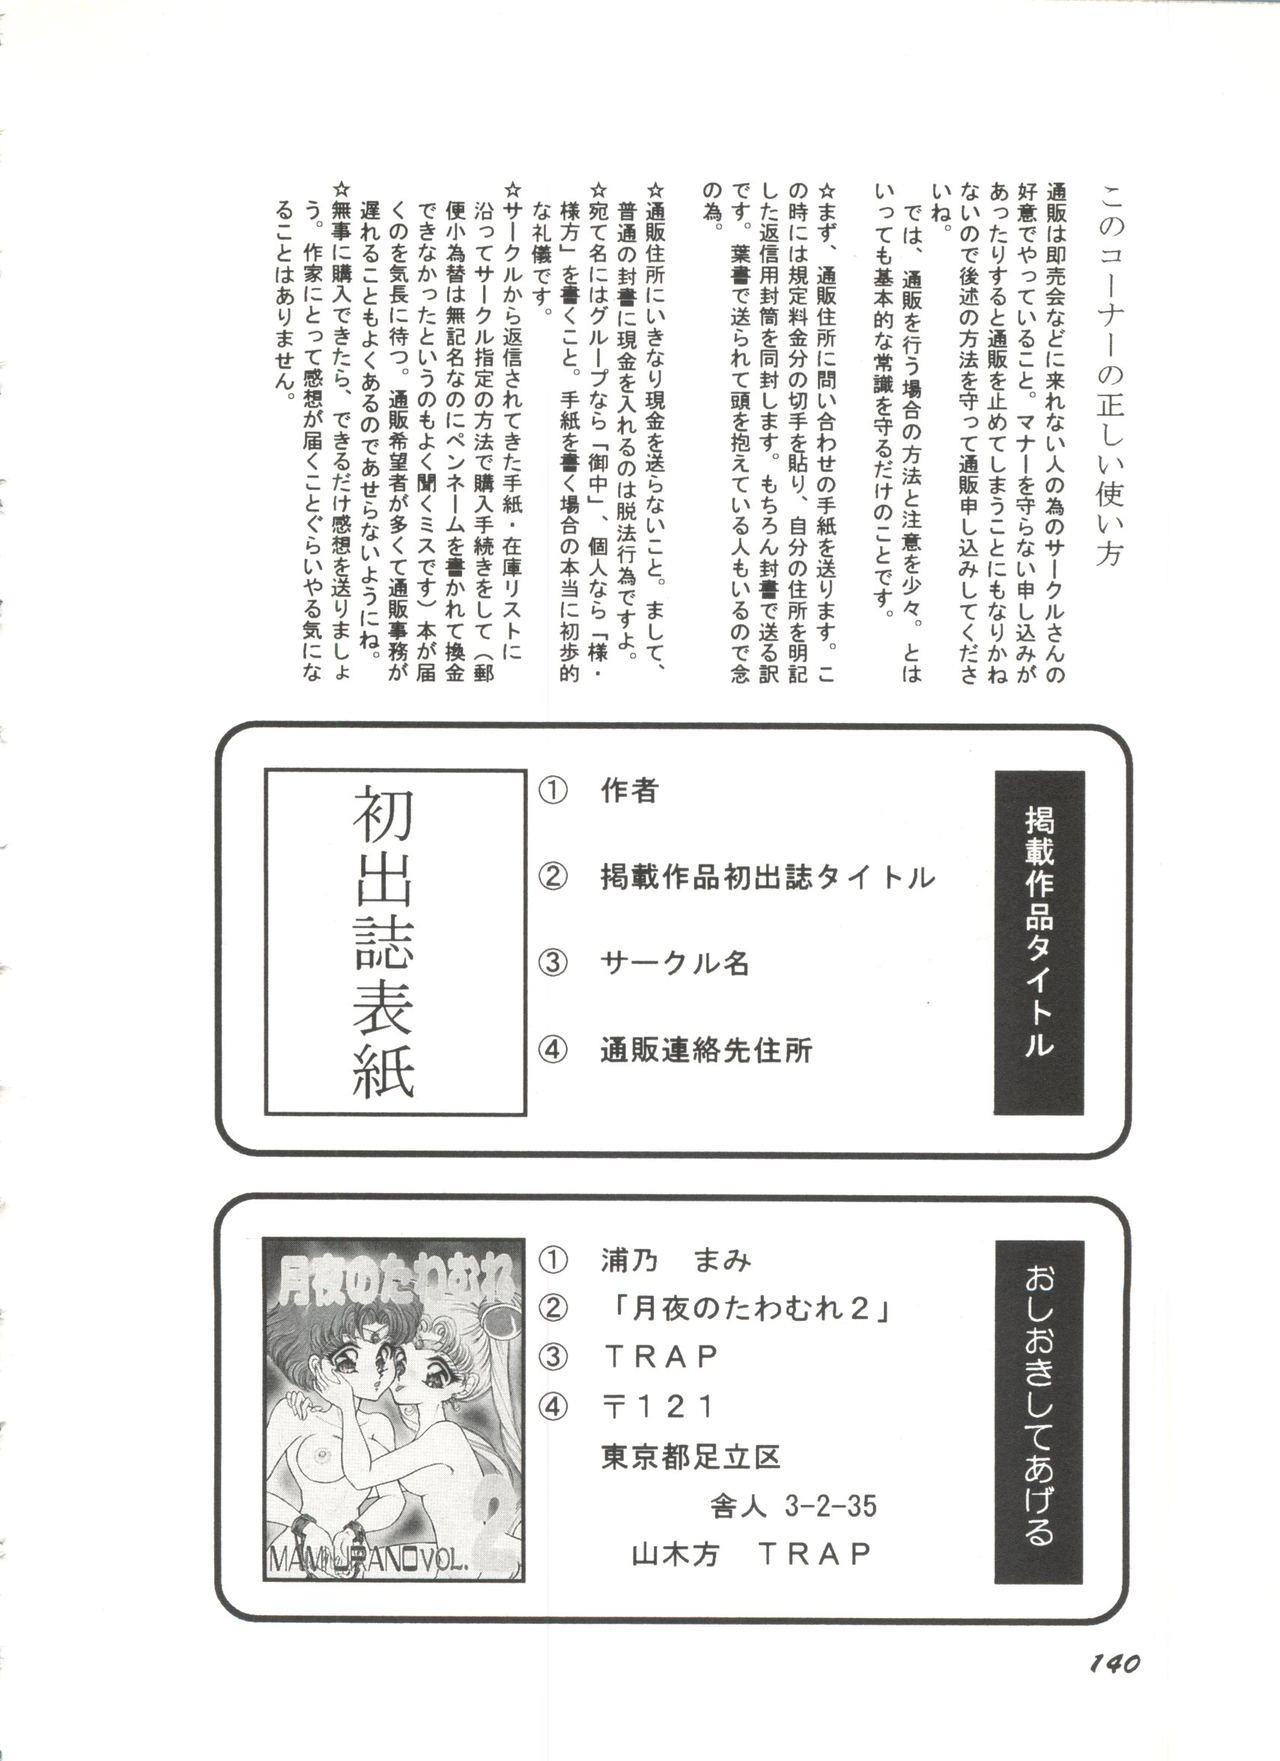 Bishoujo Doujinshi Anthology 1 141